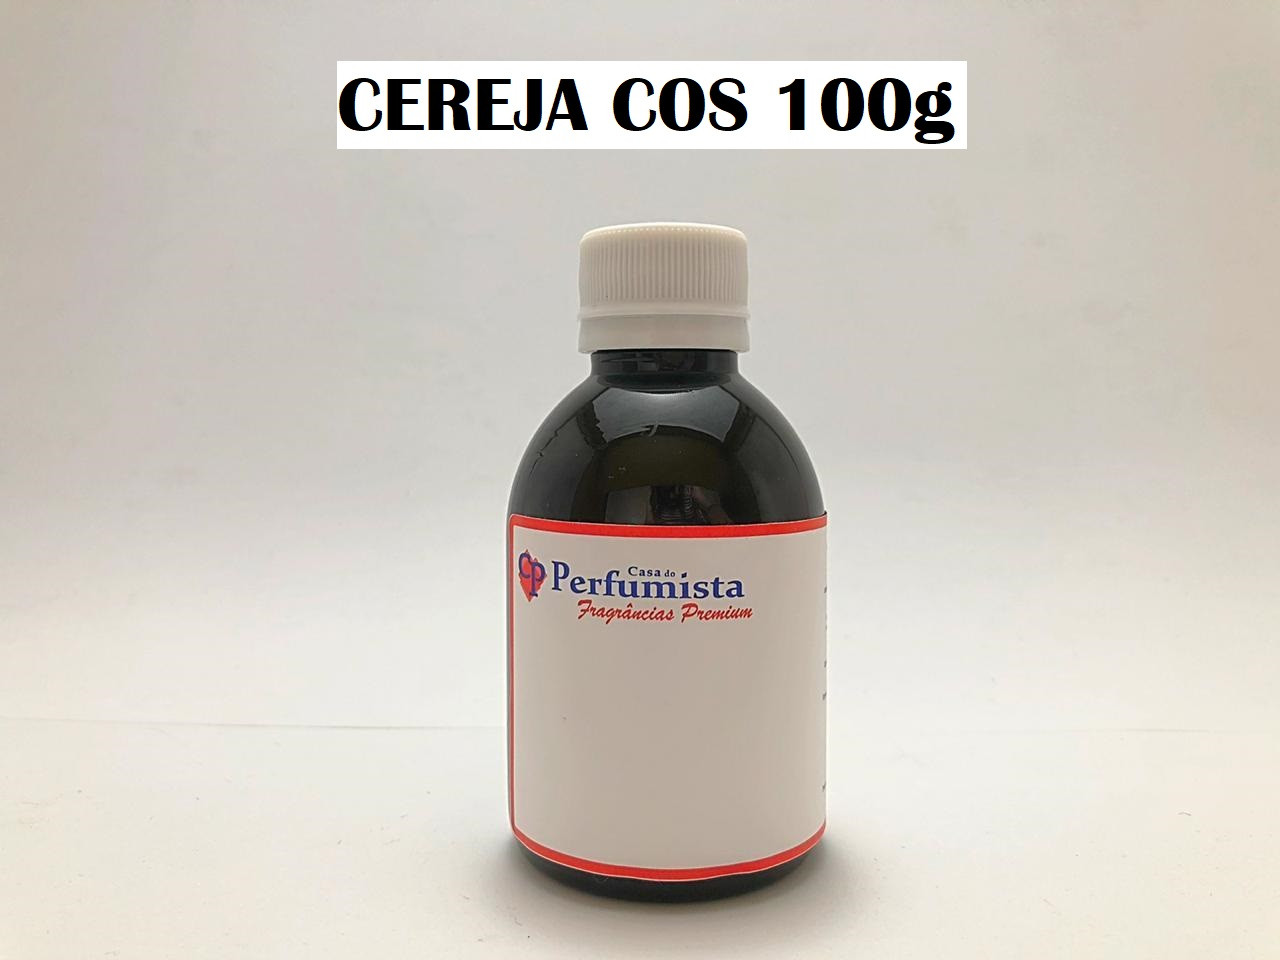 CEREJA COS - 100g